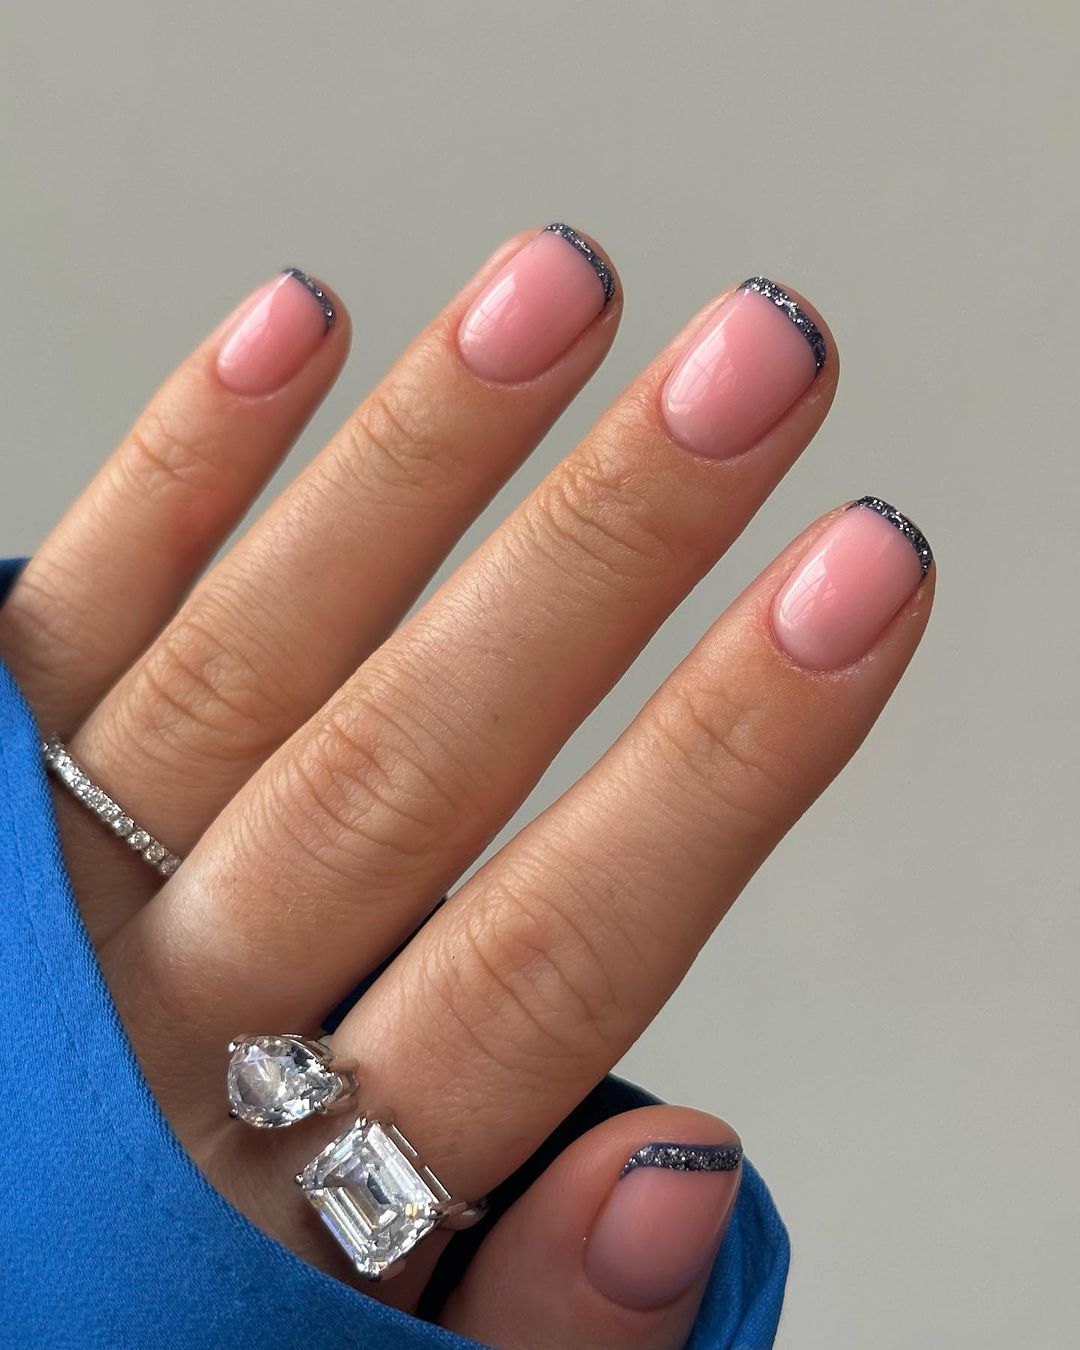 Korte nude nagels met glittertips